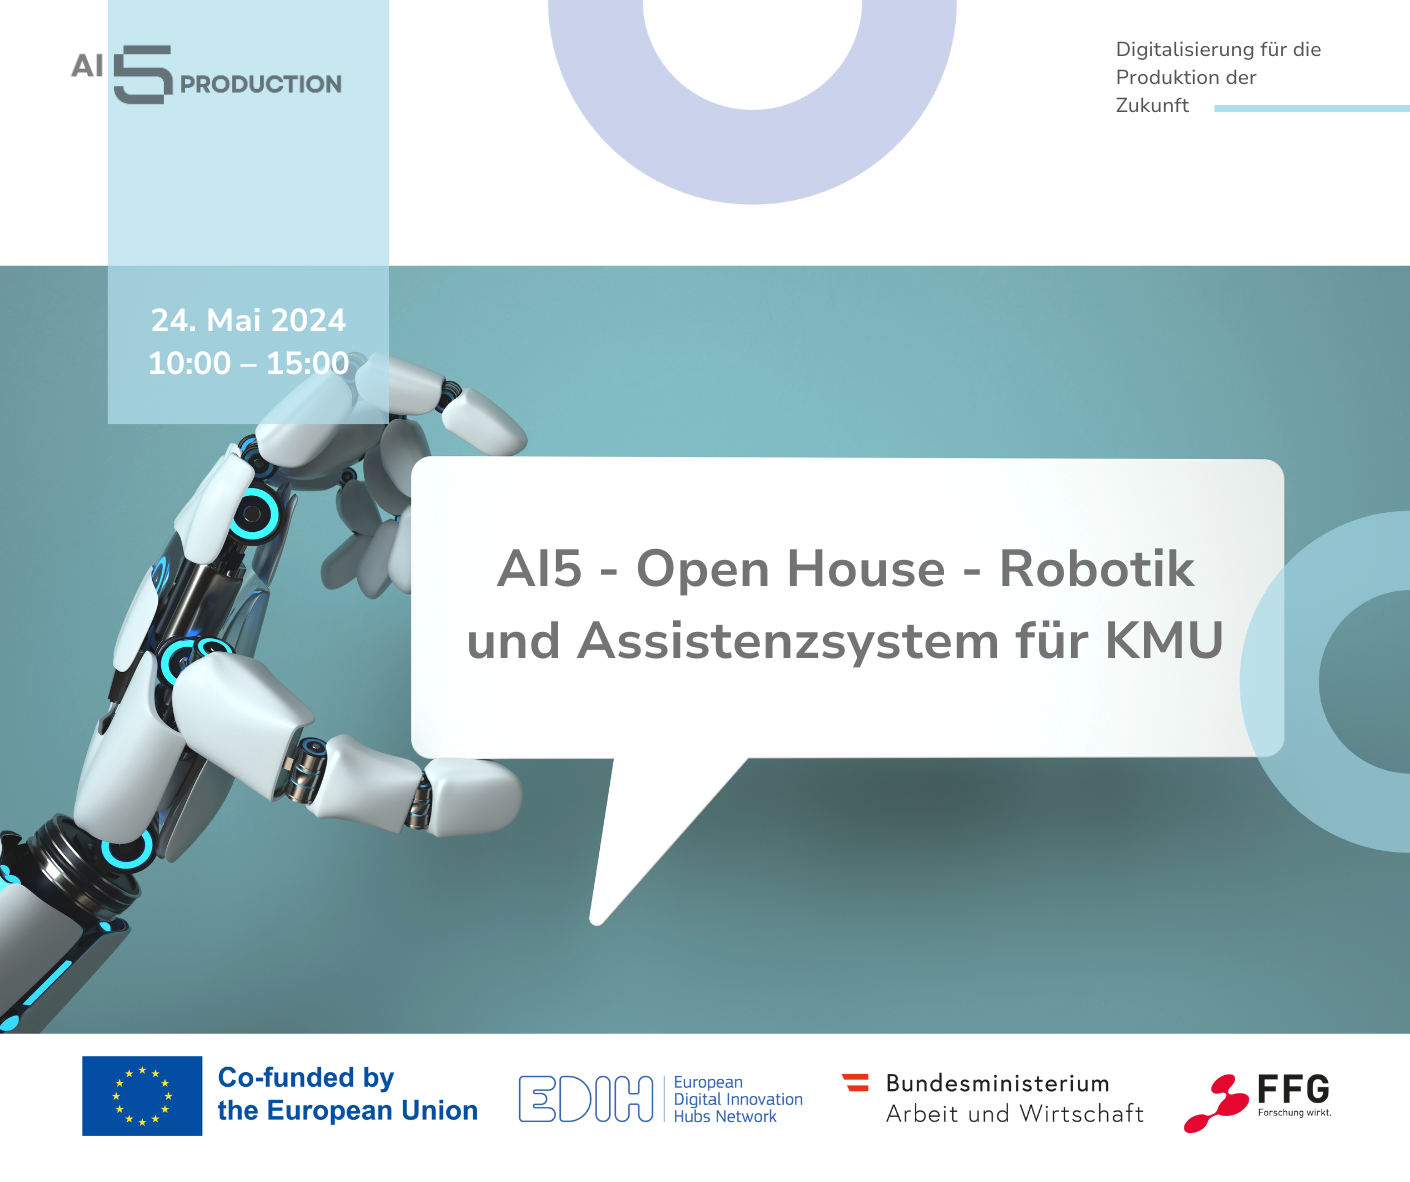 AI5production - Open House - Qualitätssicherung, digitale Assistenz und Robotik für die Produktion